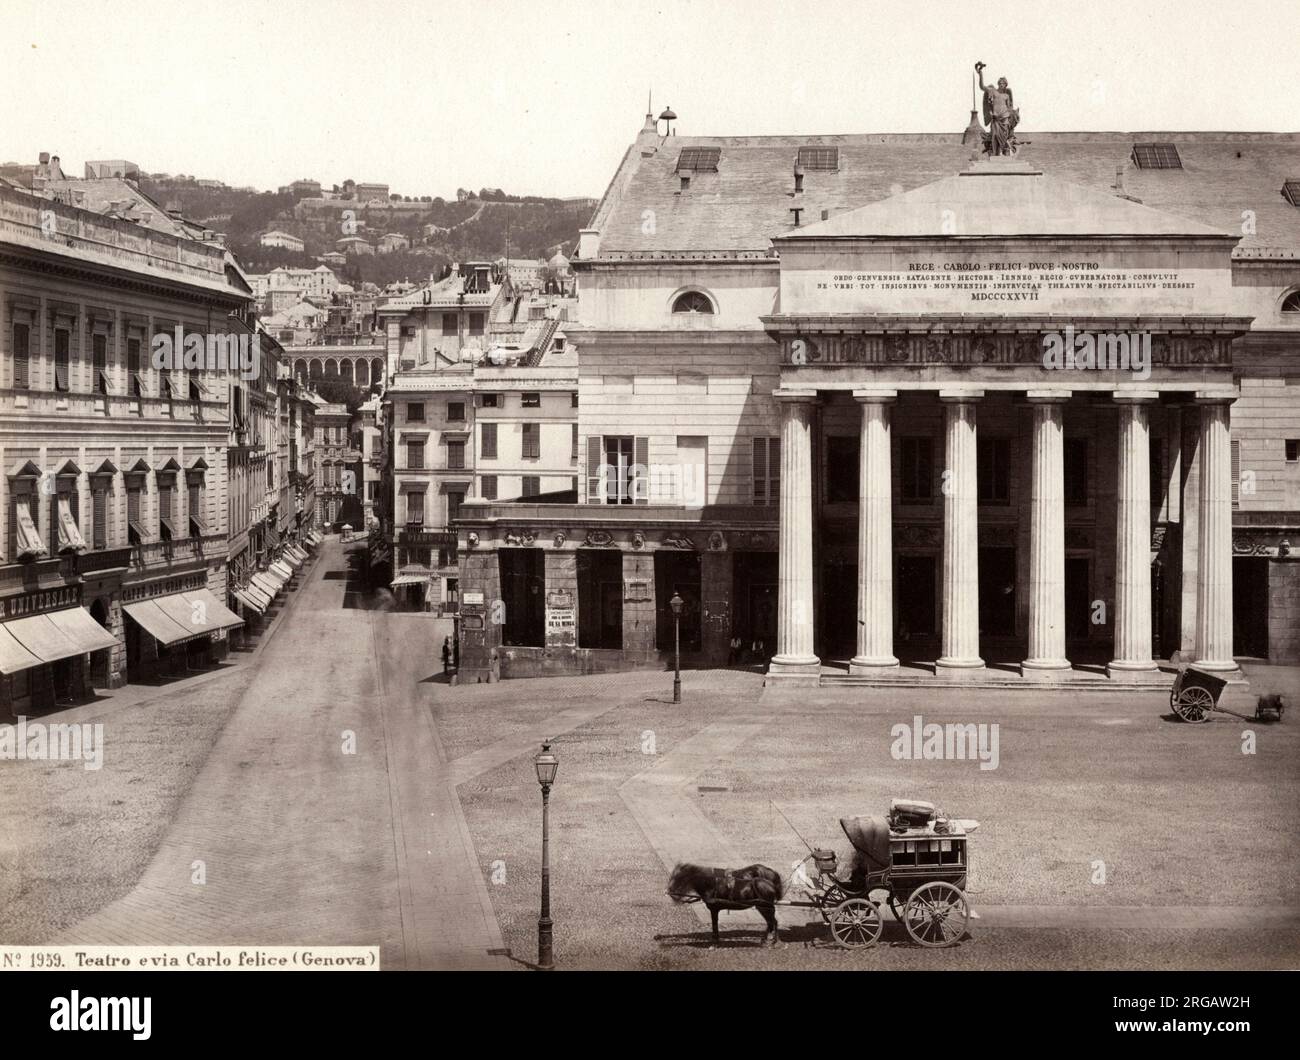 19. Jahrhundert Vintage-Foto - das Teatro Carlo Felice, das wichtigste Opernhaus von Genua, Italien, für Aufführungen von Oper, Ballett, Orchestermusik und Recitals verwendet. Es befindet sich auf der Seite der Piazza De Ferrari. Bild c.1880. Stockfoto